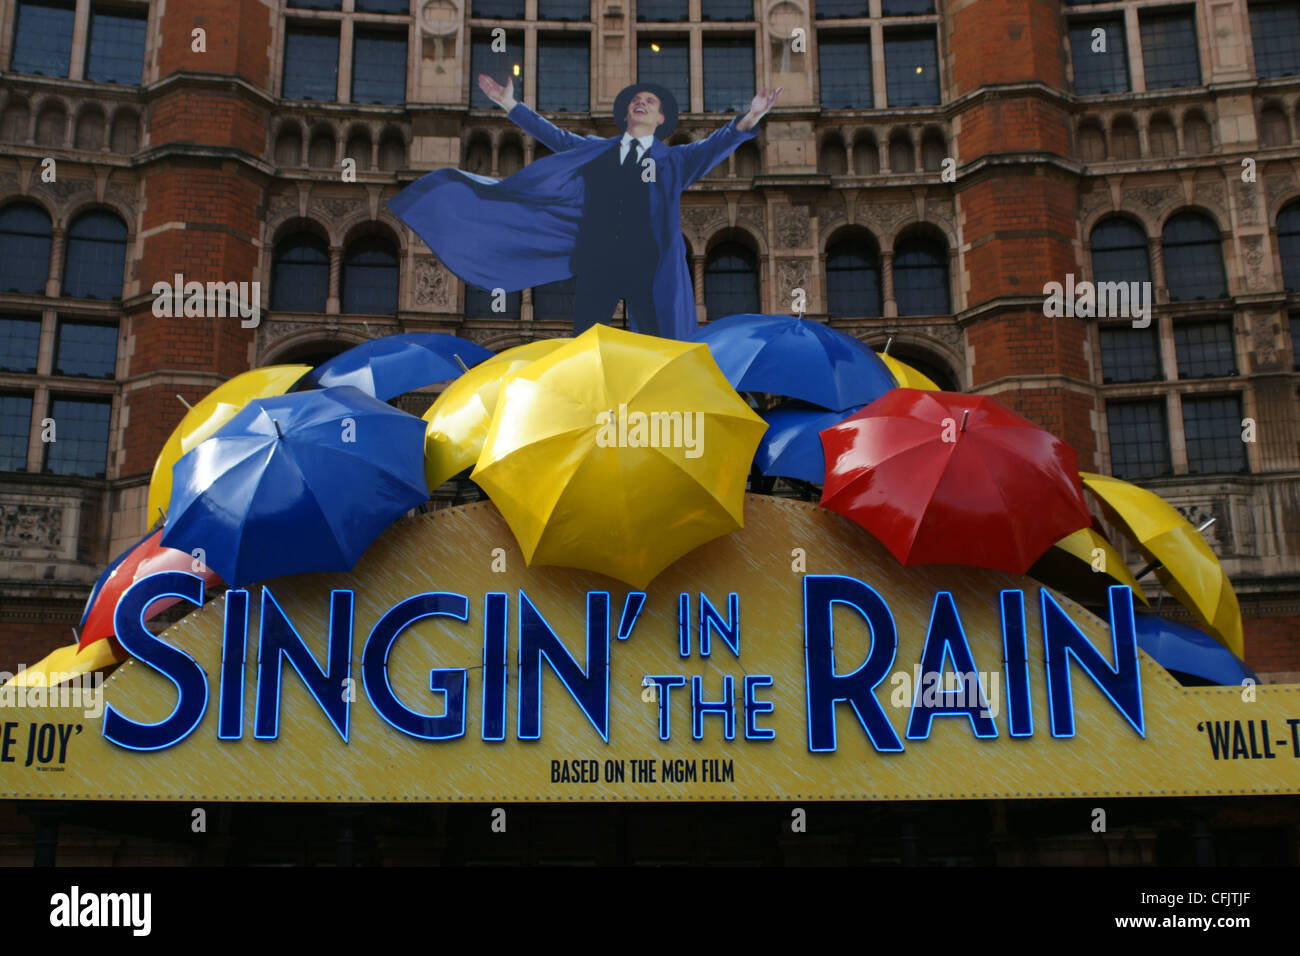 Panneaux d'Singin' in the Rain au Palace Theatre, Londres Banque D'Images